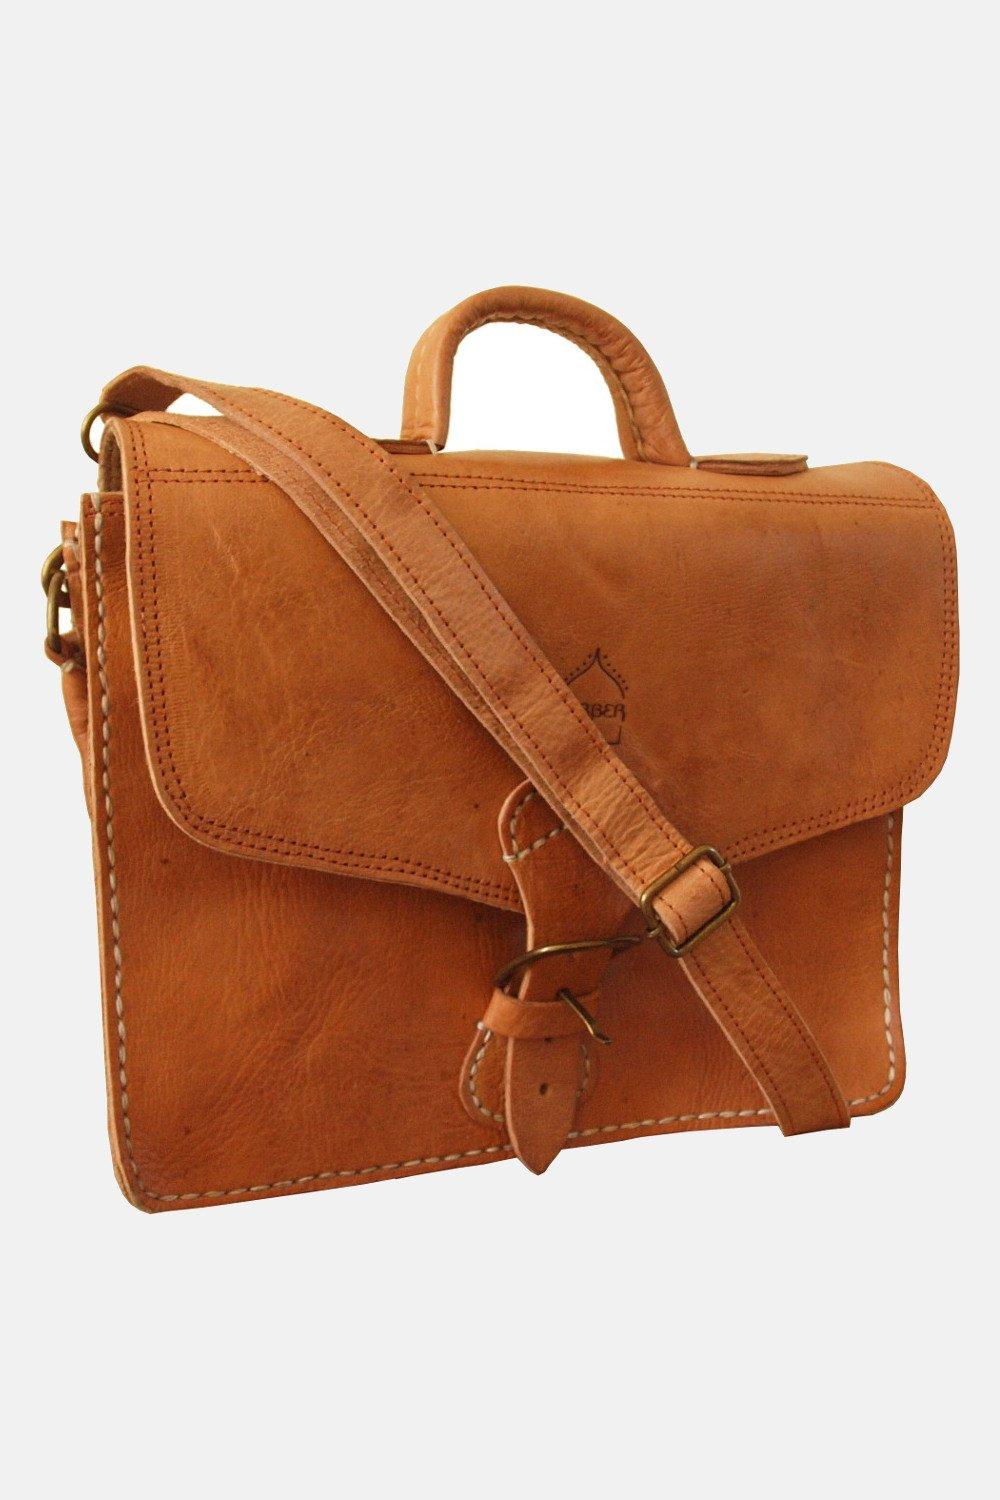 Миниатюрная кожаная сумка The Marrakech Berber Leather, коричневый сумка багет повседневная регулируемый ремень черный